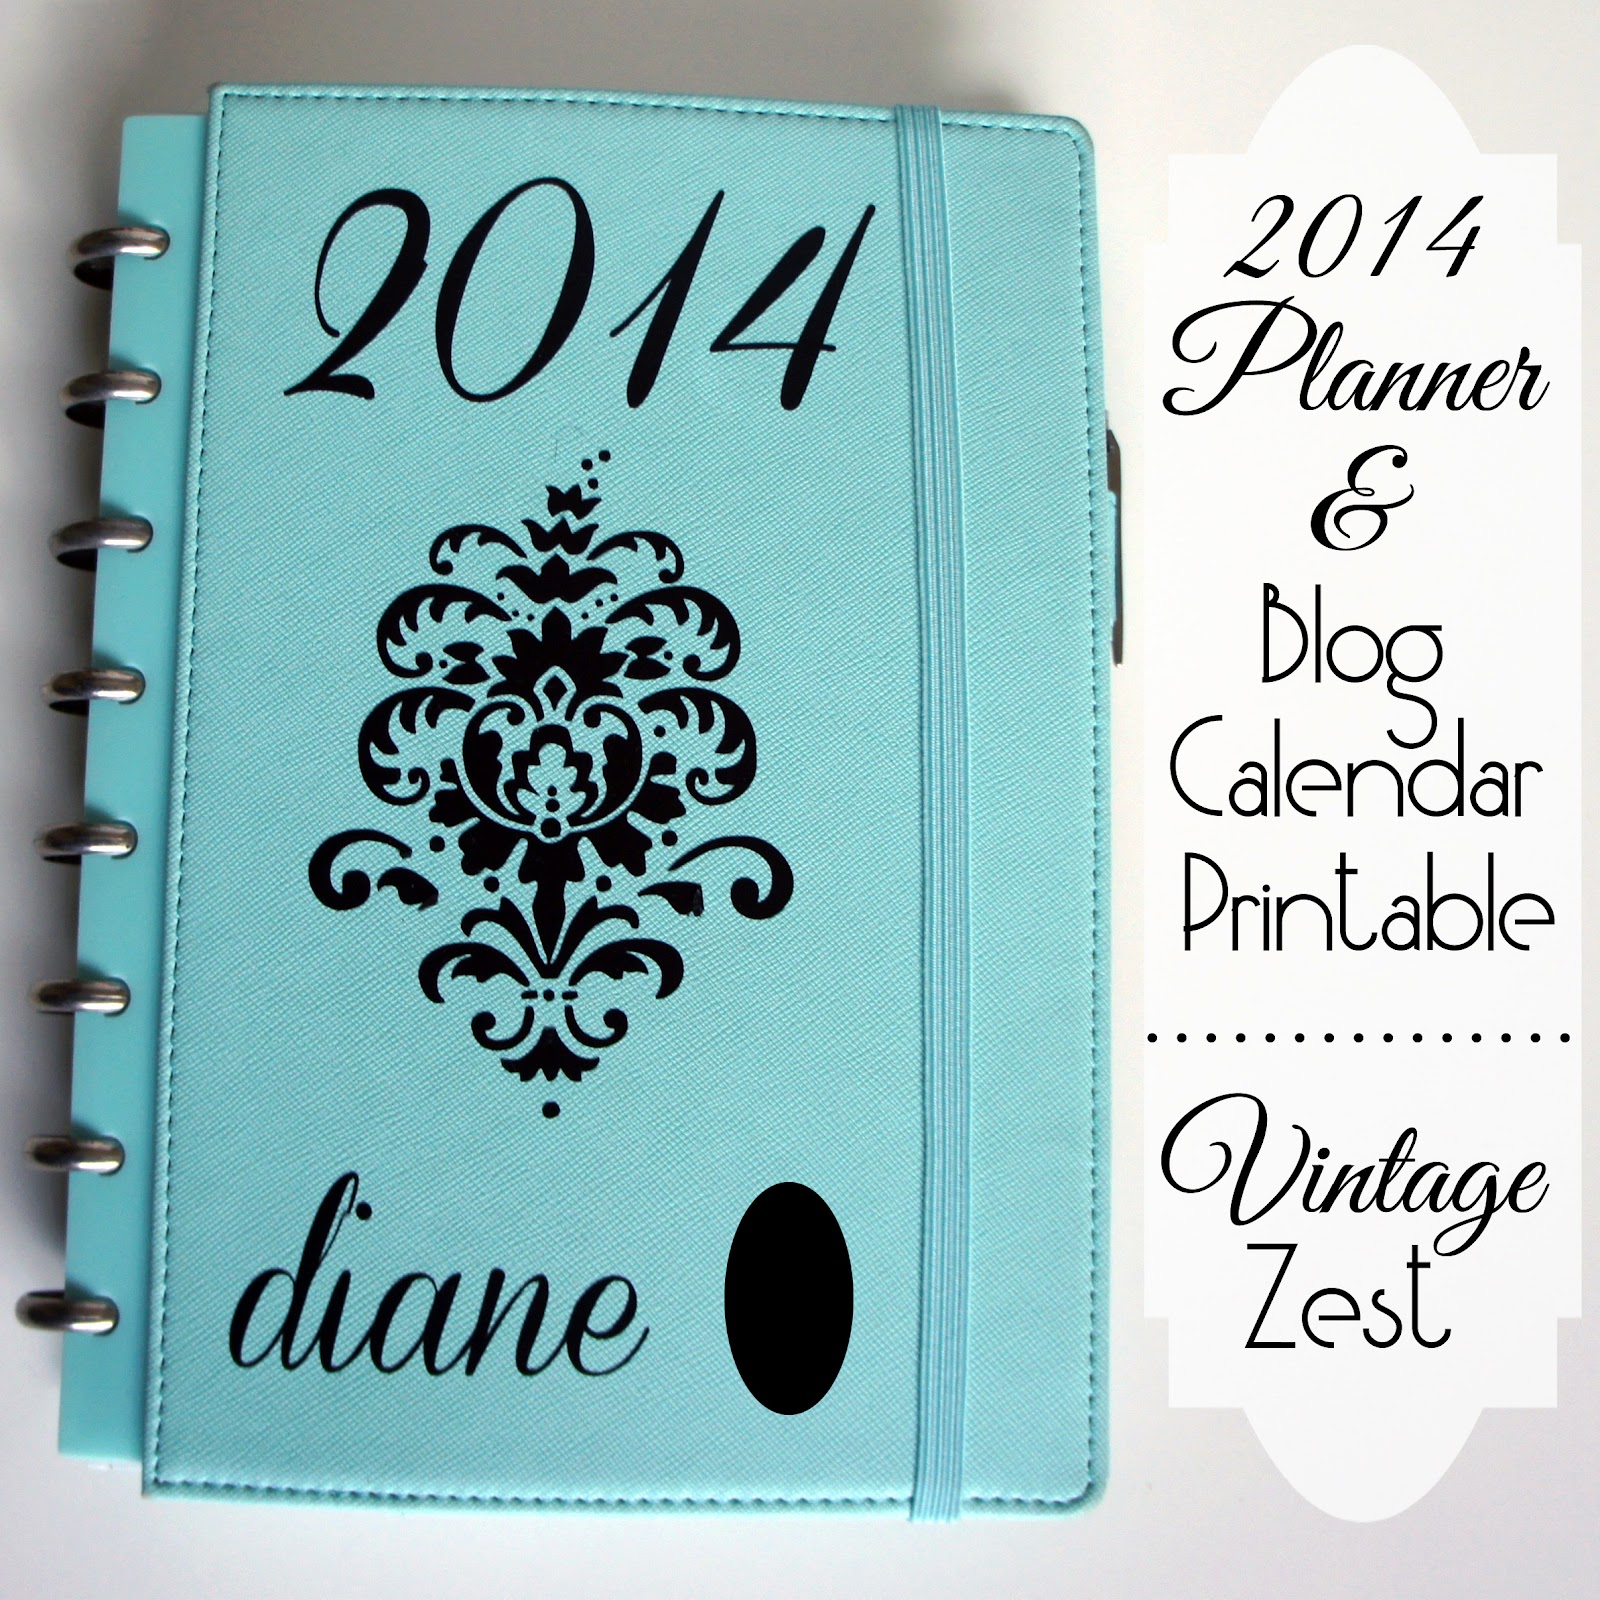 2014 Planner & Free Blog Calendar Printable on Diane's Vintage Zest!